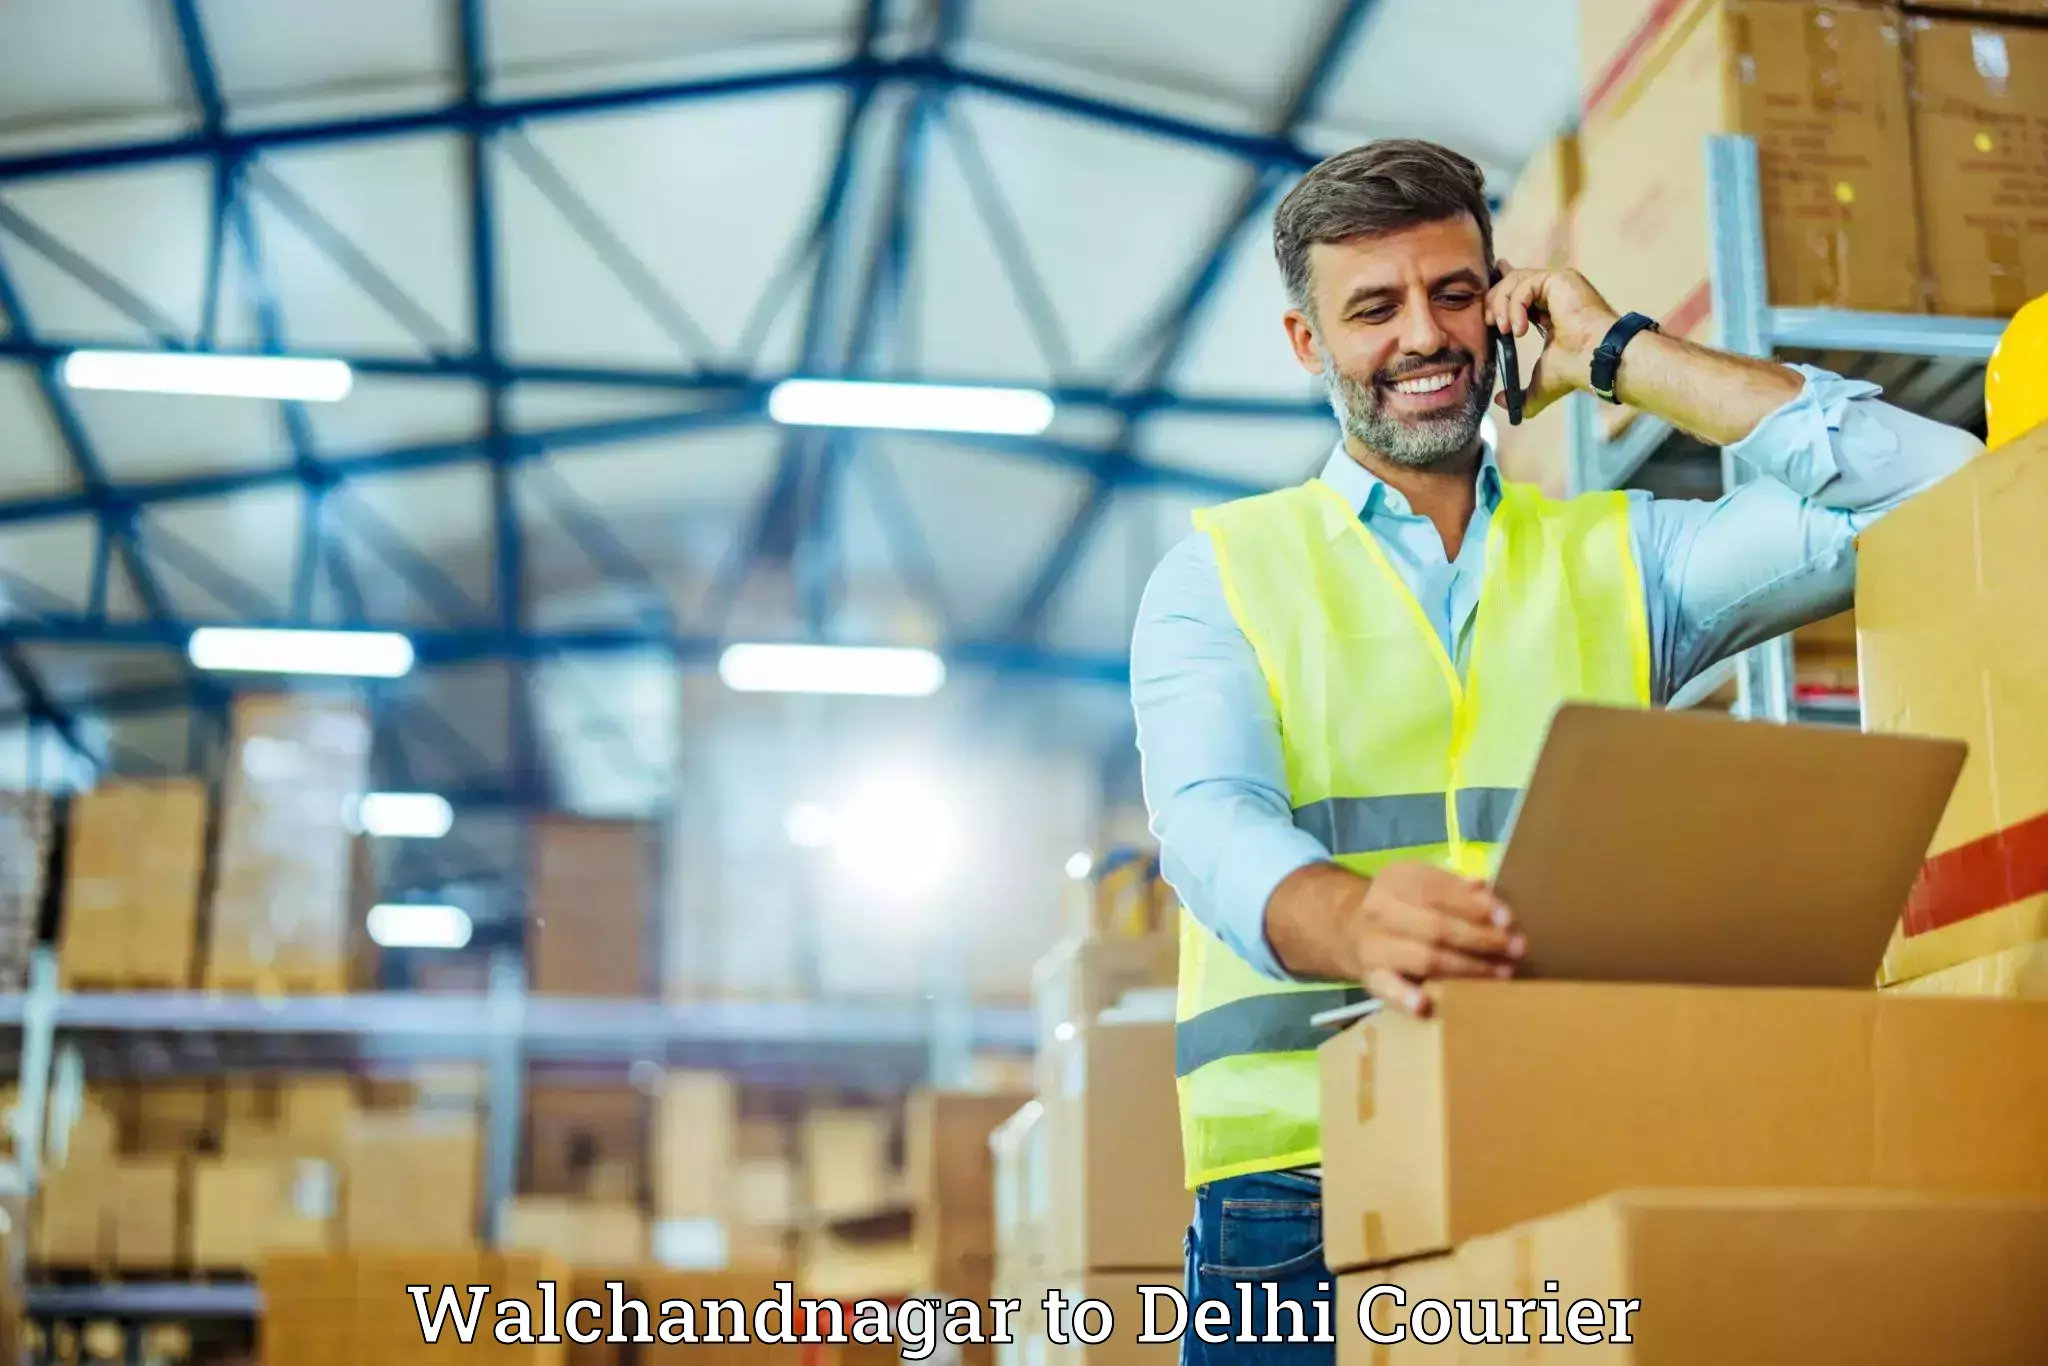 Luggage shipment specialists Walchandnagar to Sansad Marg